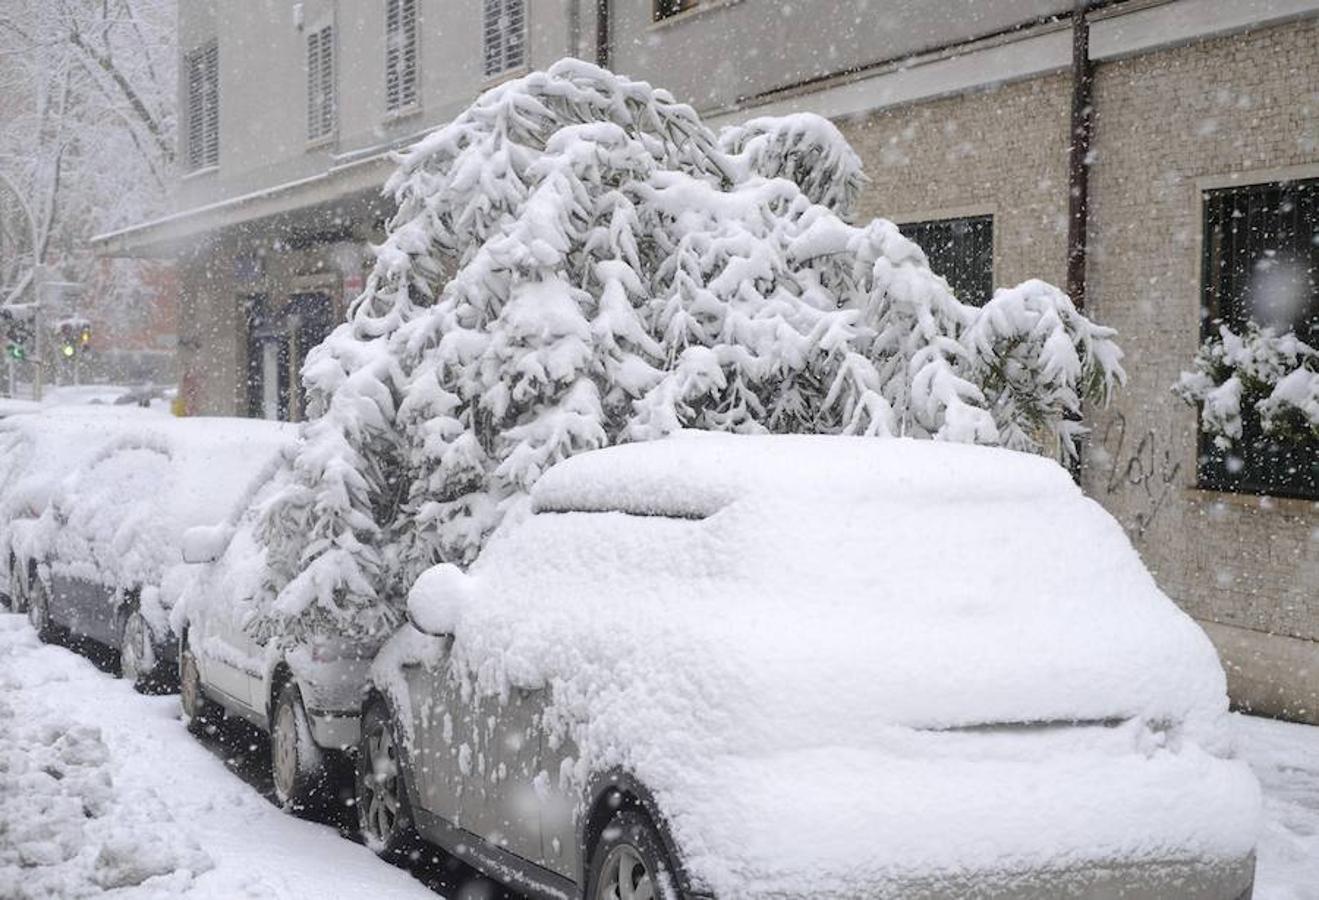 El peso de la nieve ha inclinado a este árbol que se ha precipitado sobre los vehículos aparcados. 